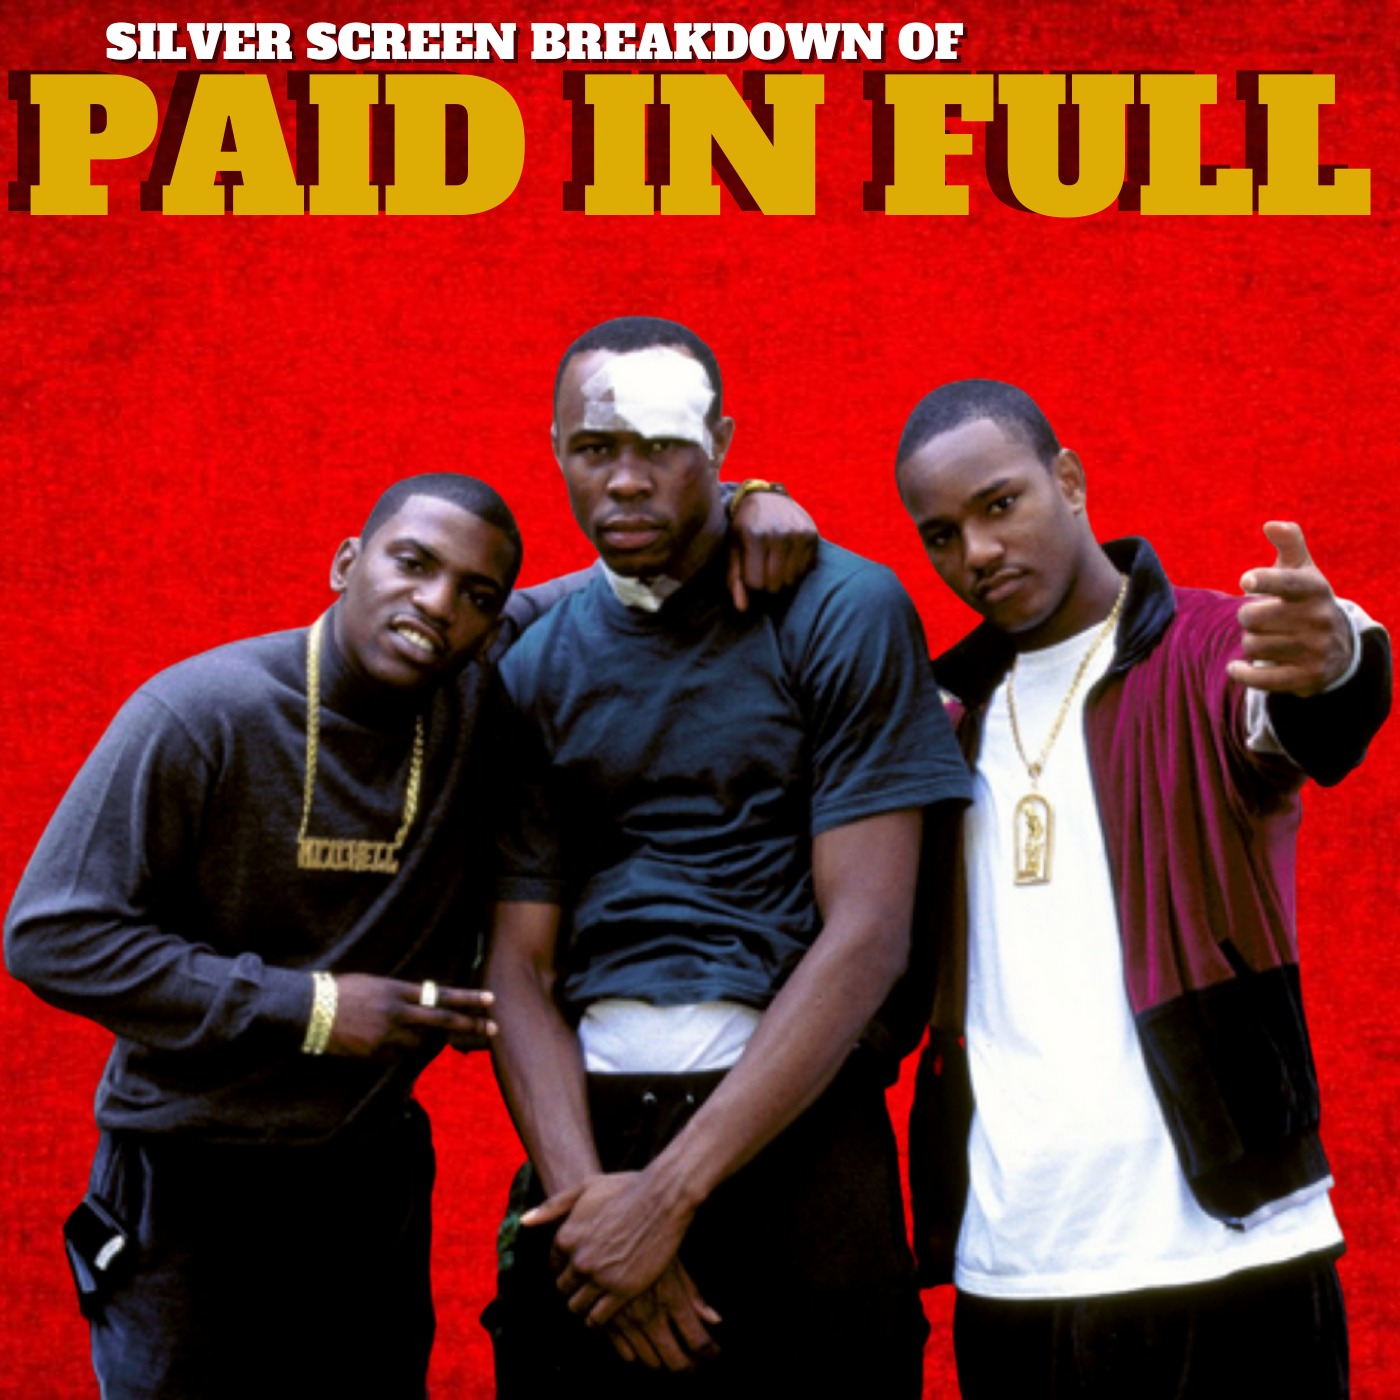 Paid In Full (2002) Film Breakdown | Silver Screen Breakdowns Image